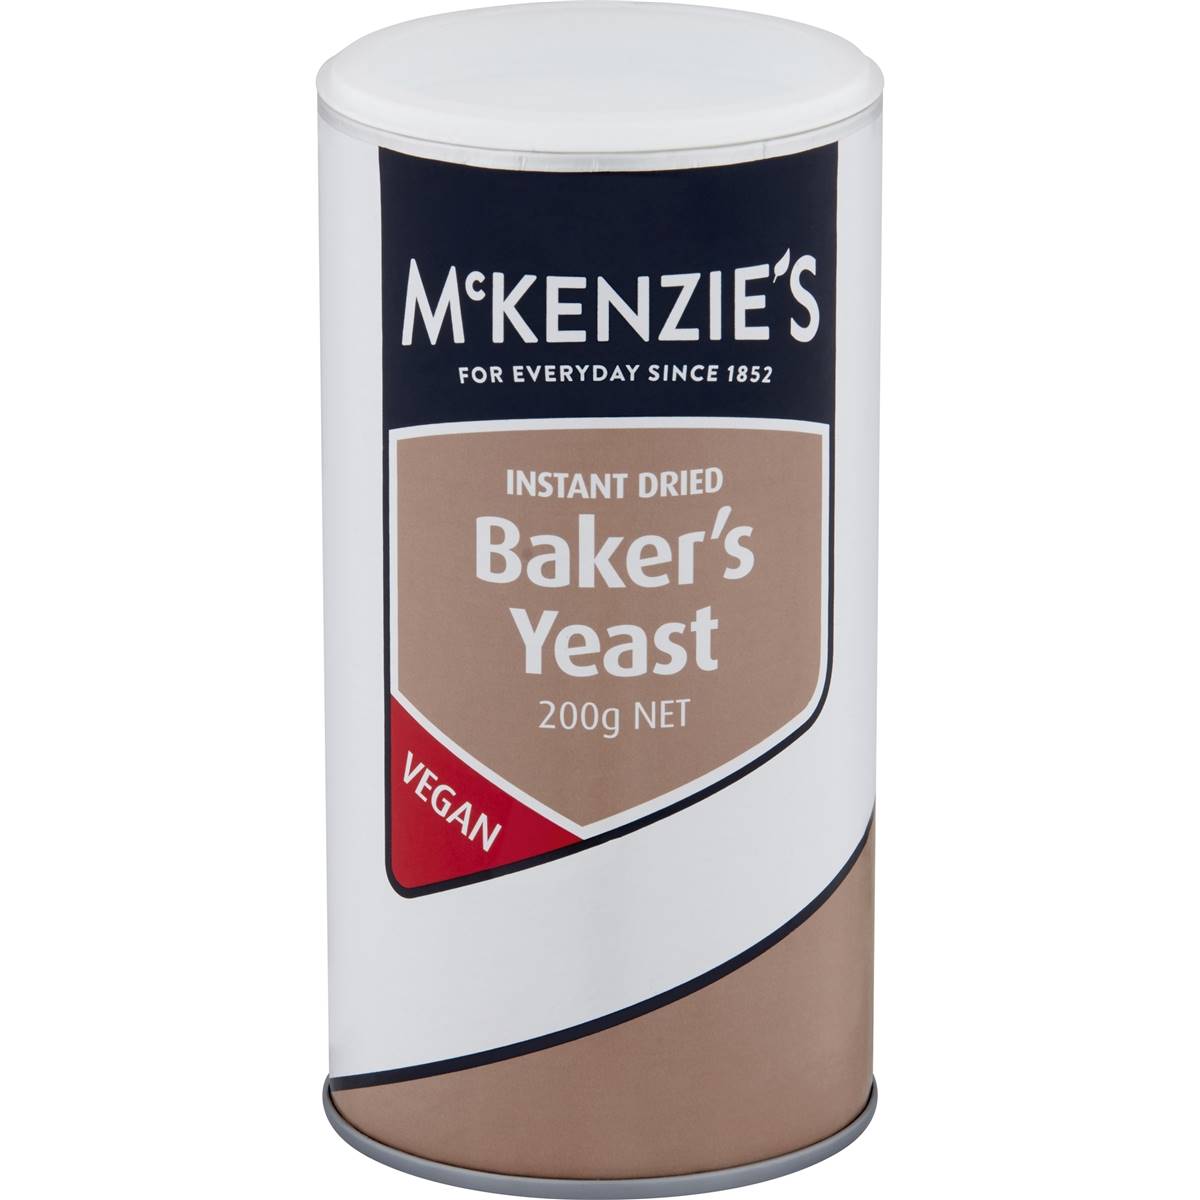 Calories in Mckenzie's Vegan Instant Dried Baker's Yeast